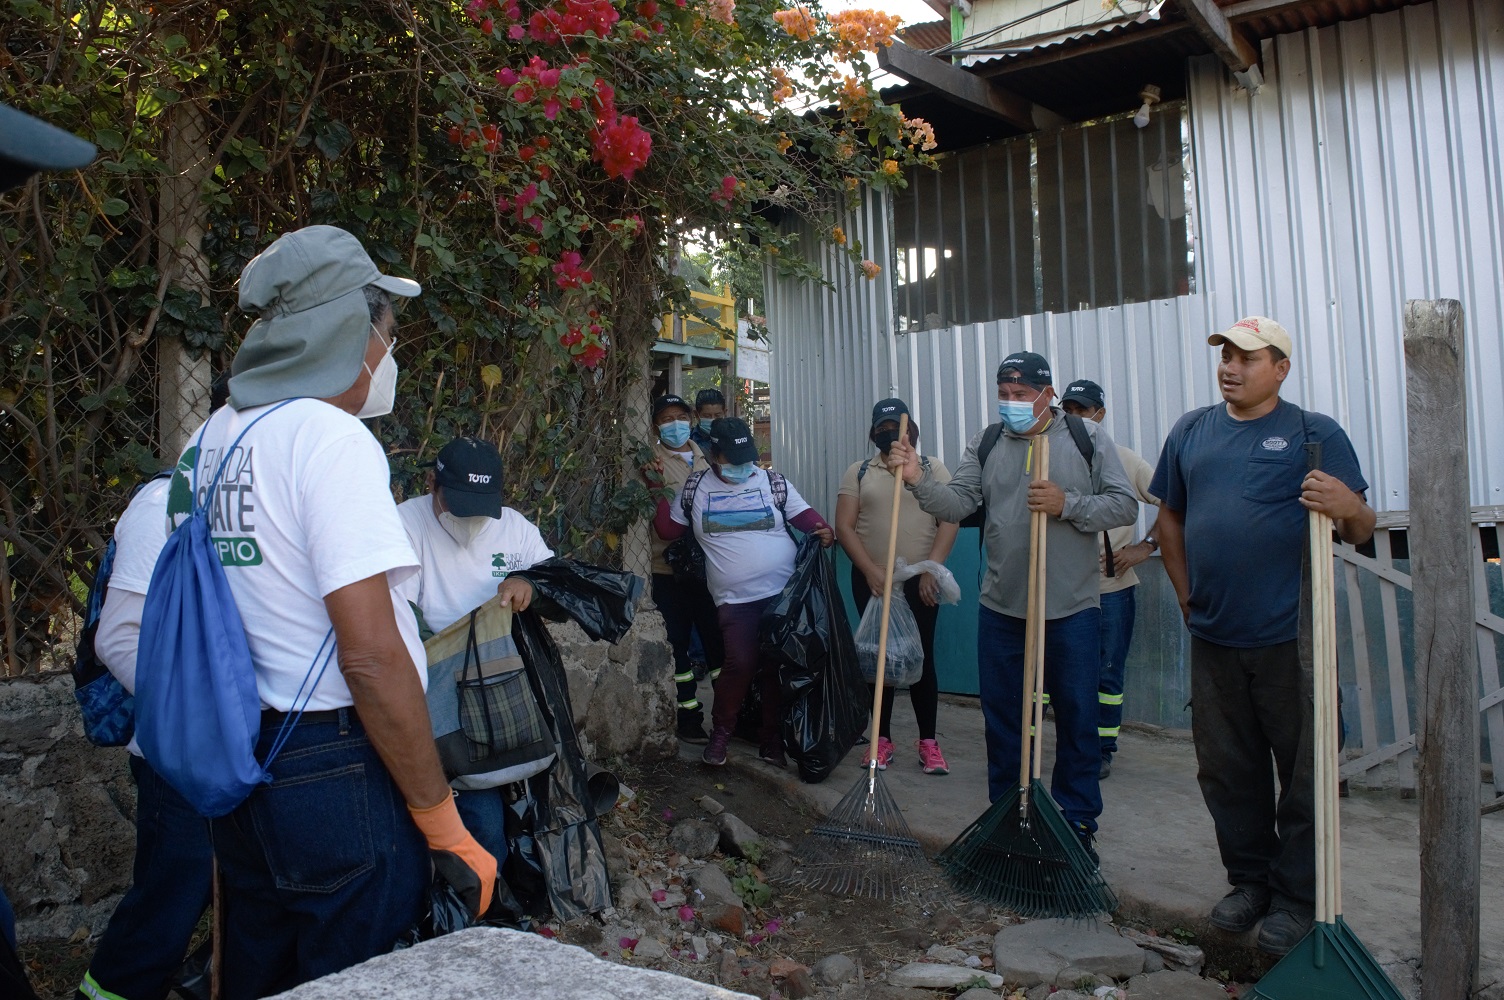 Representantes de las Adescos Unidas y Fundación Coatepeque organizan las rutas para la jornada de limpieza que realizaron el 27 de marzo, en la que en 4 horas de trabajo recolectaron 40 toneladas de basura. Foto: Carolina Amaya.